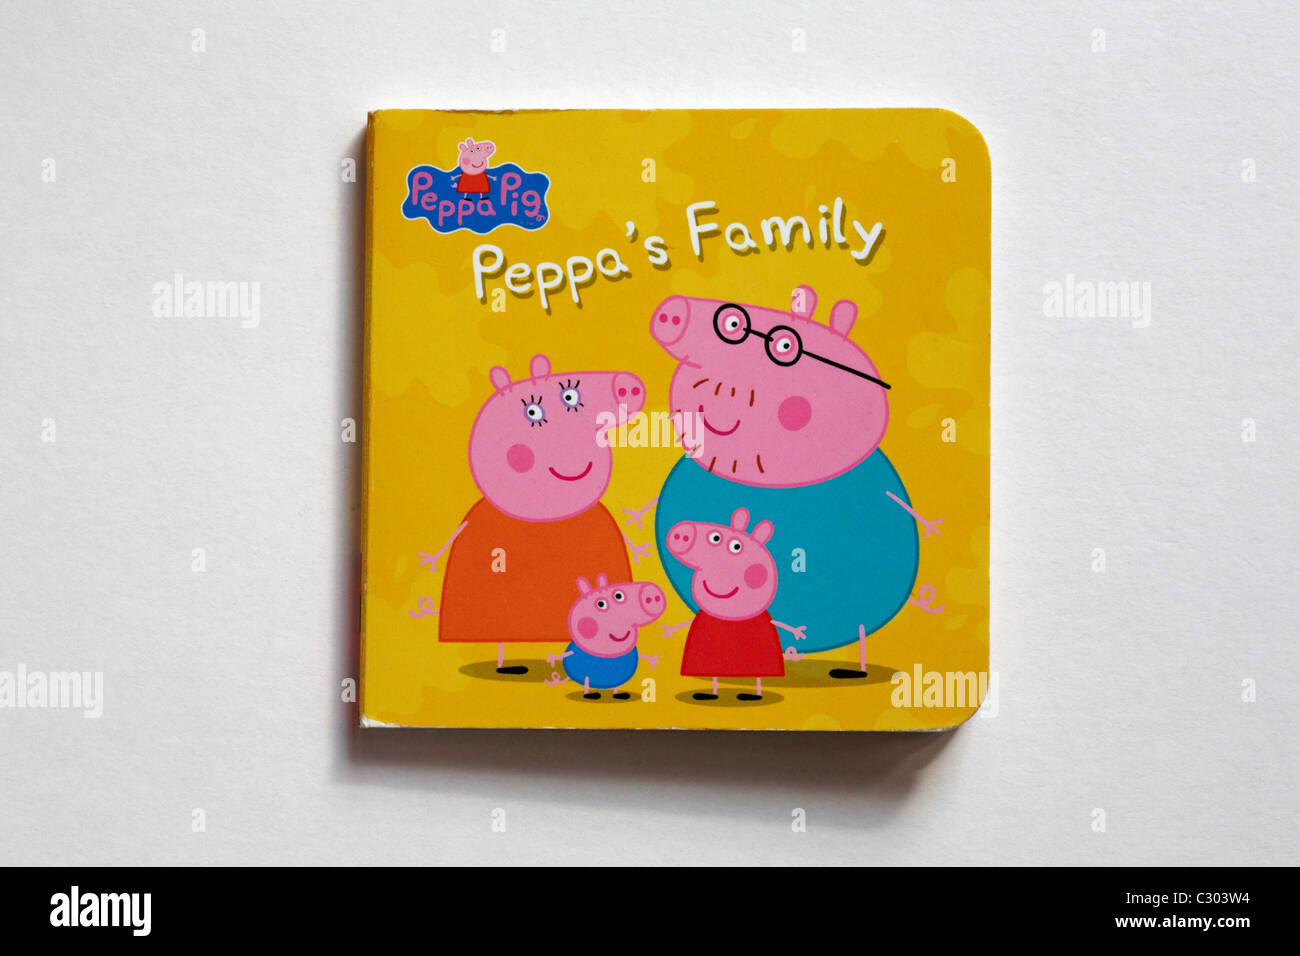 Peppa Pig Peppa's Family livre pour enfants isolé sur fond blanc Banque D'Images